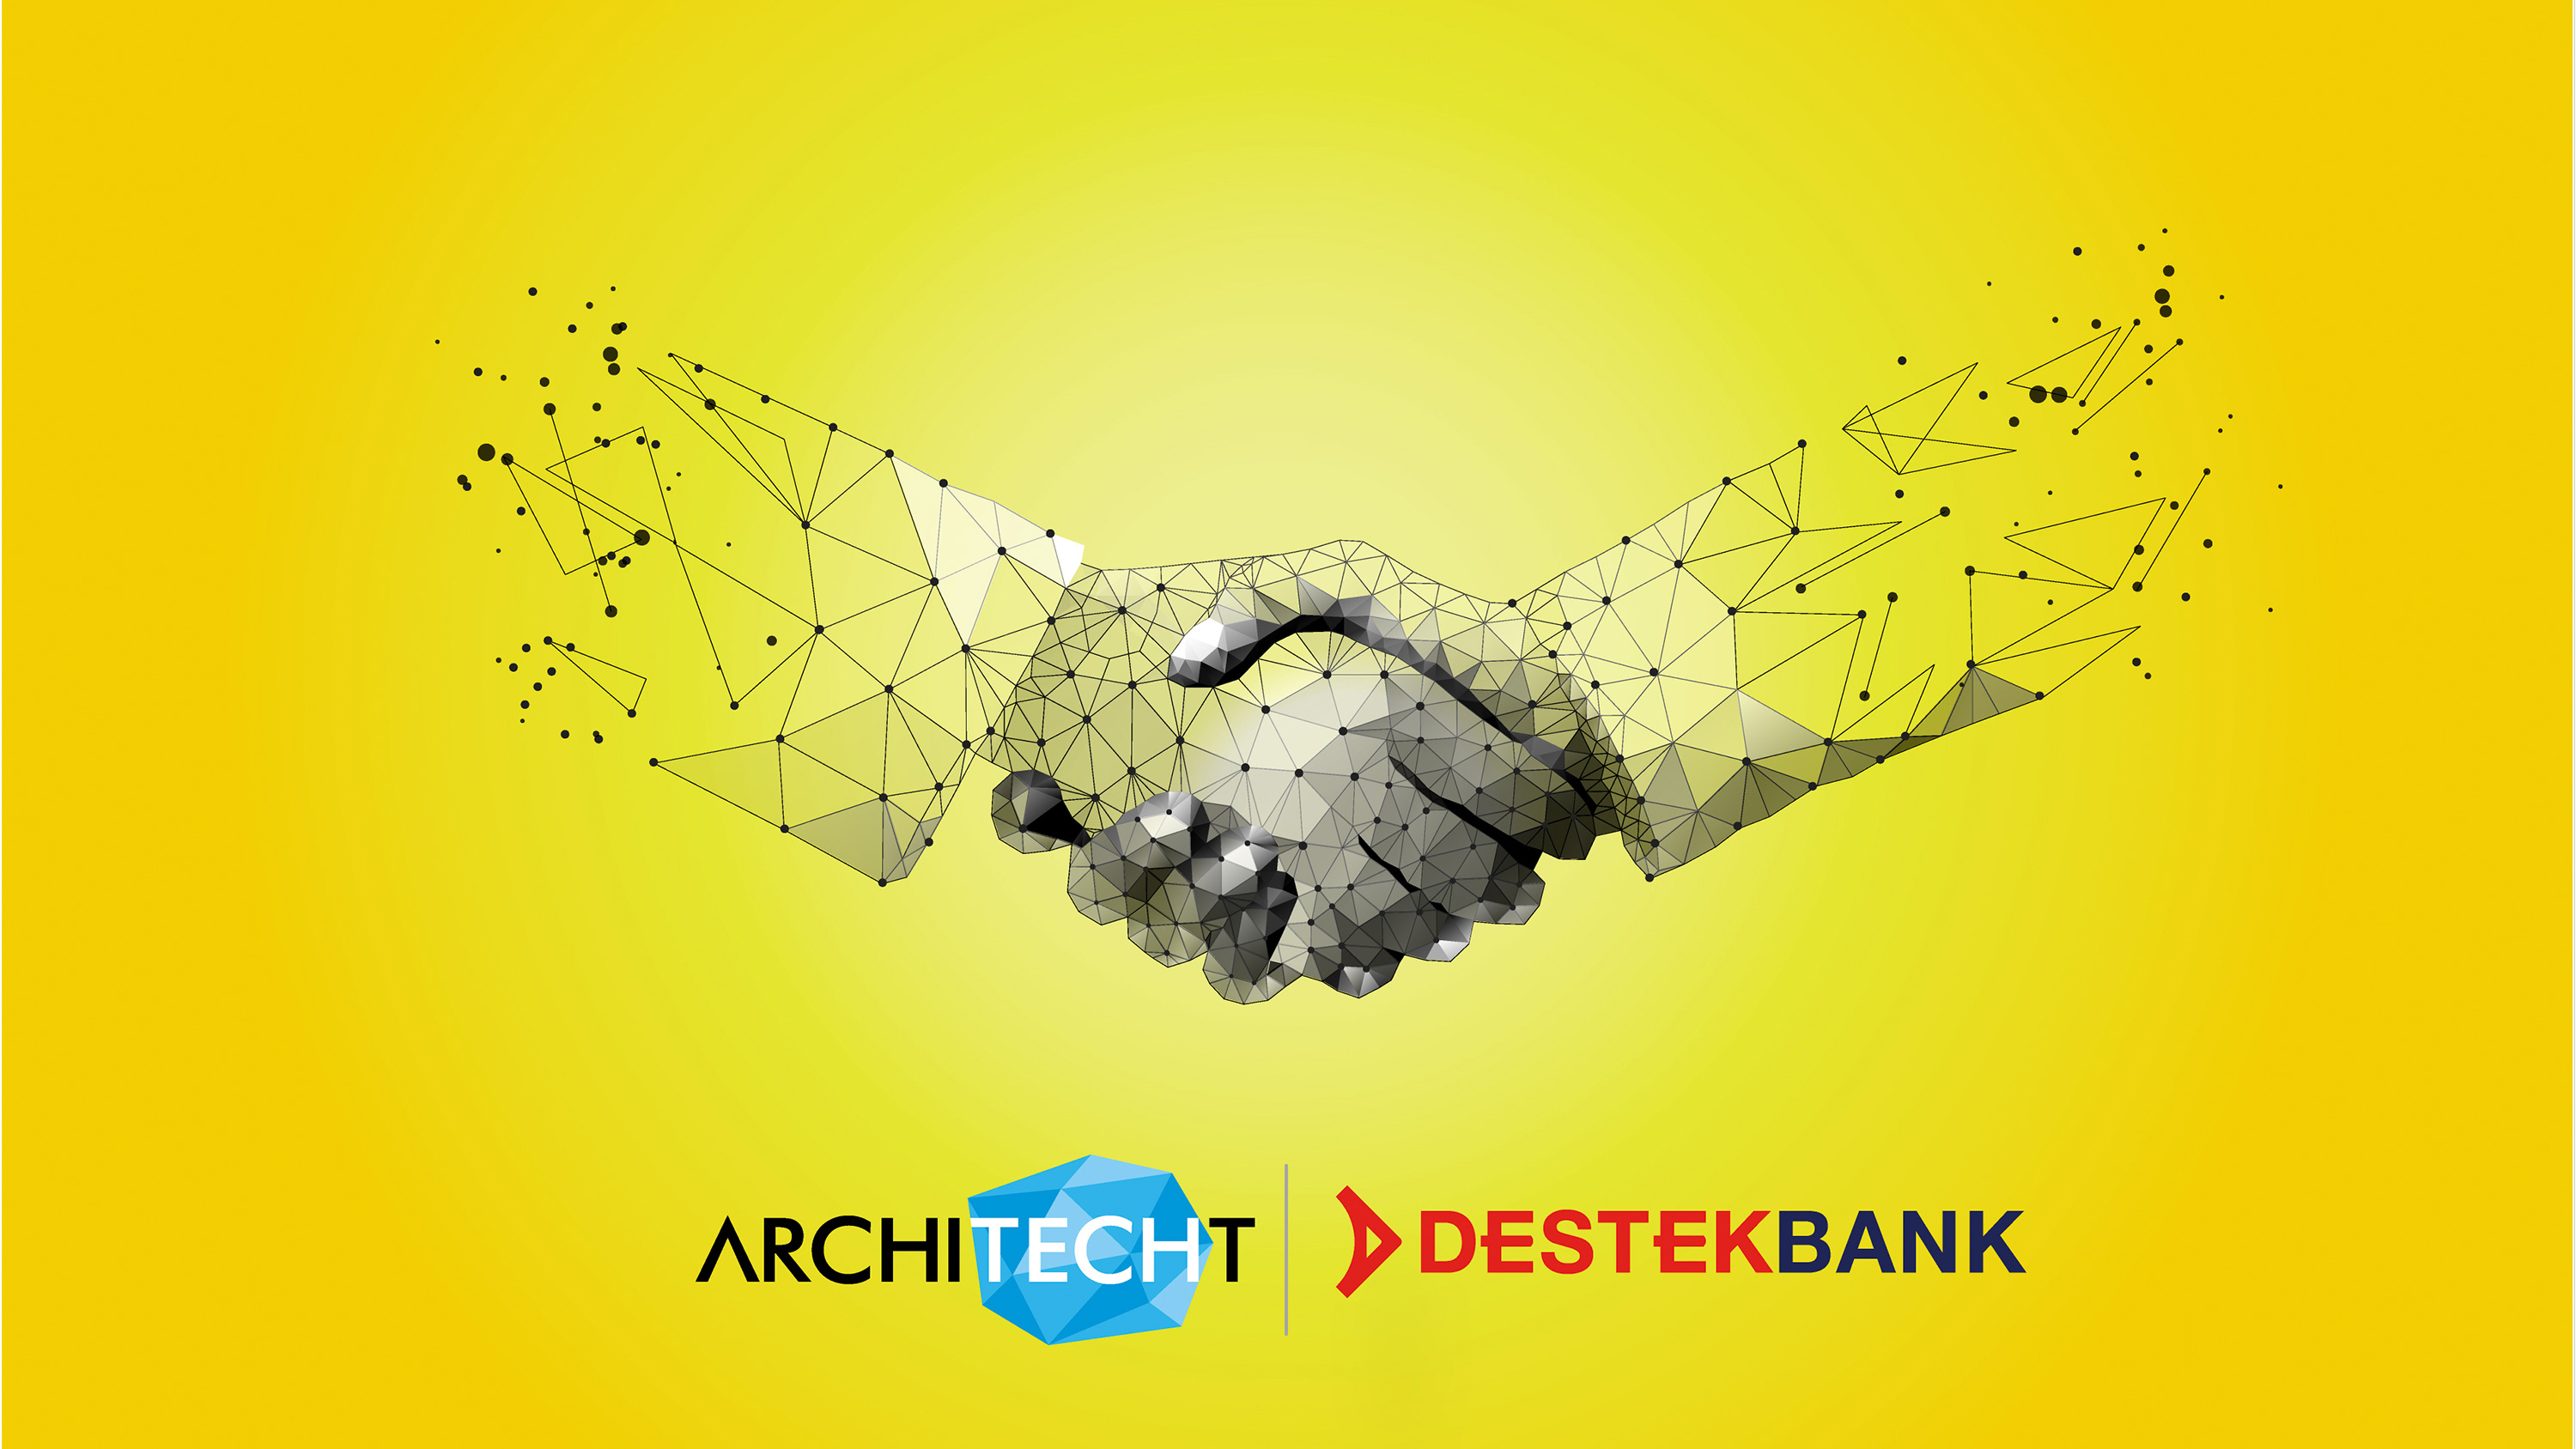 Destek Yatırım Bankası'nın teknolojik altyapısı Architecht’e emanet